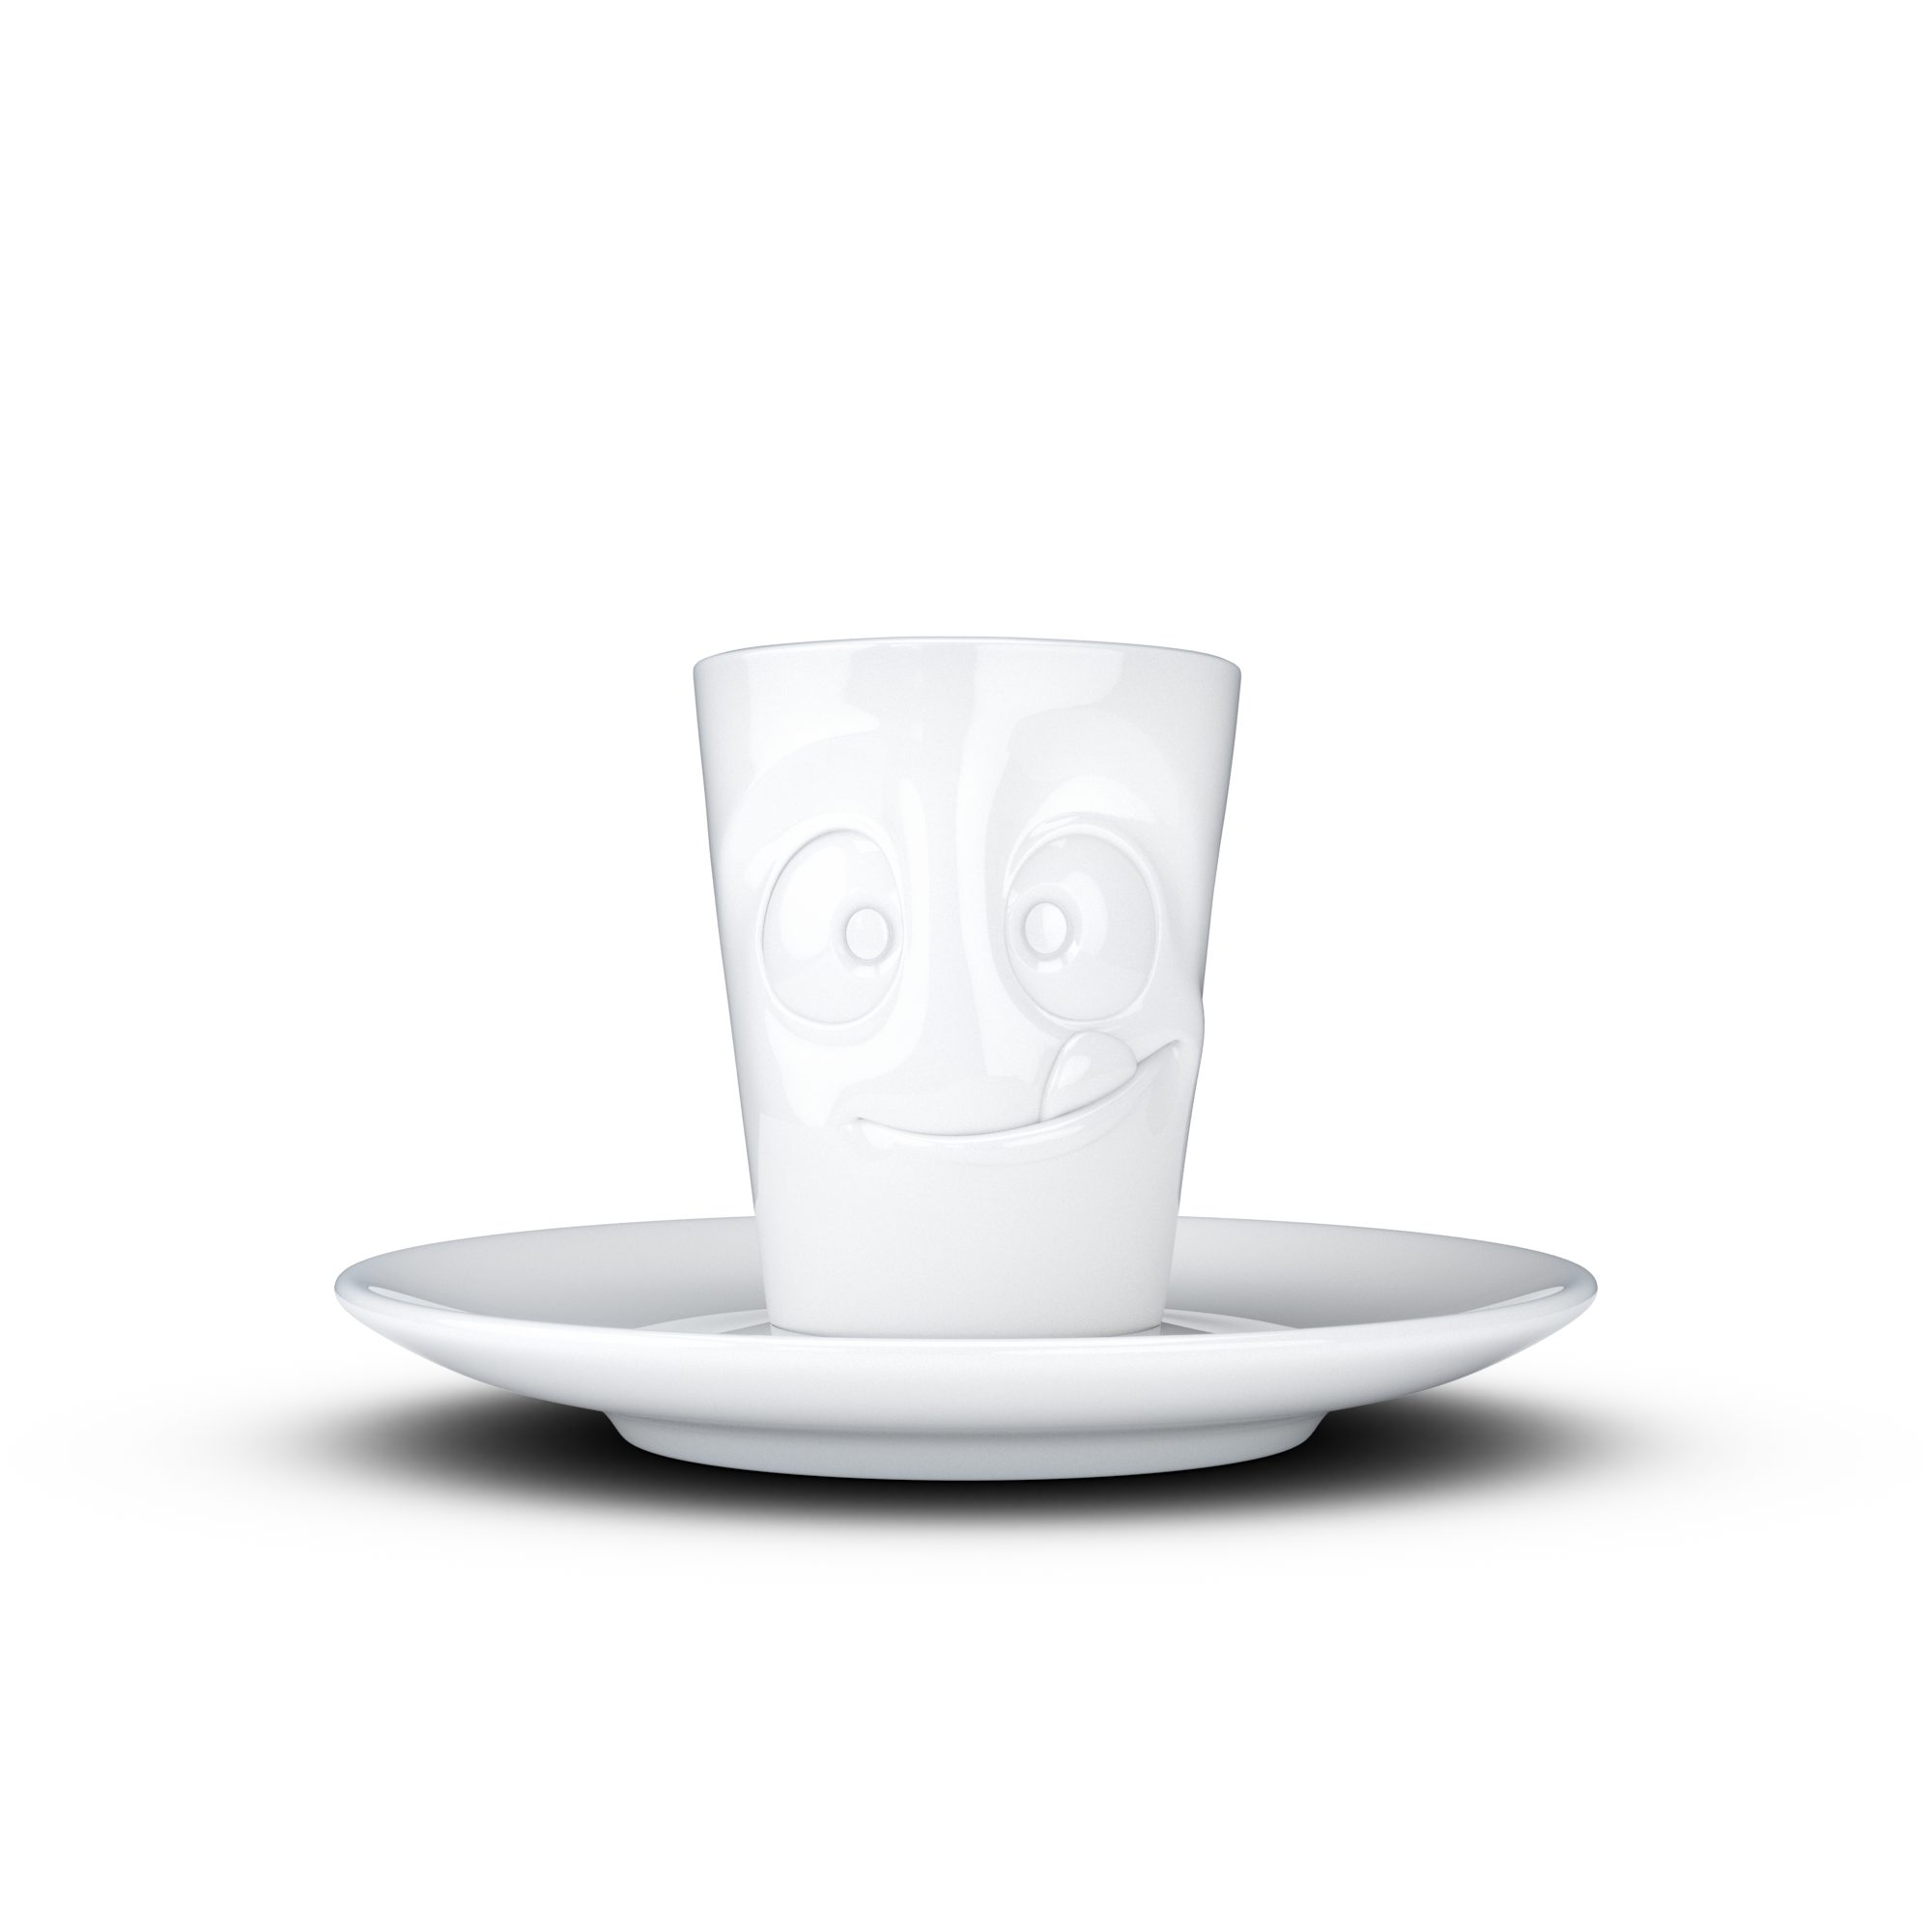 FIFTYEIGHT PRODUCTS Espressotasse Espresso Mug mit Henkel 80ml - Lecker, Porzellan